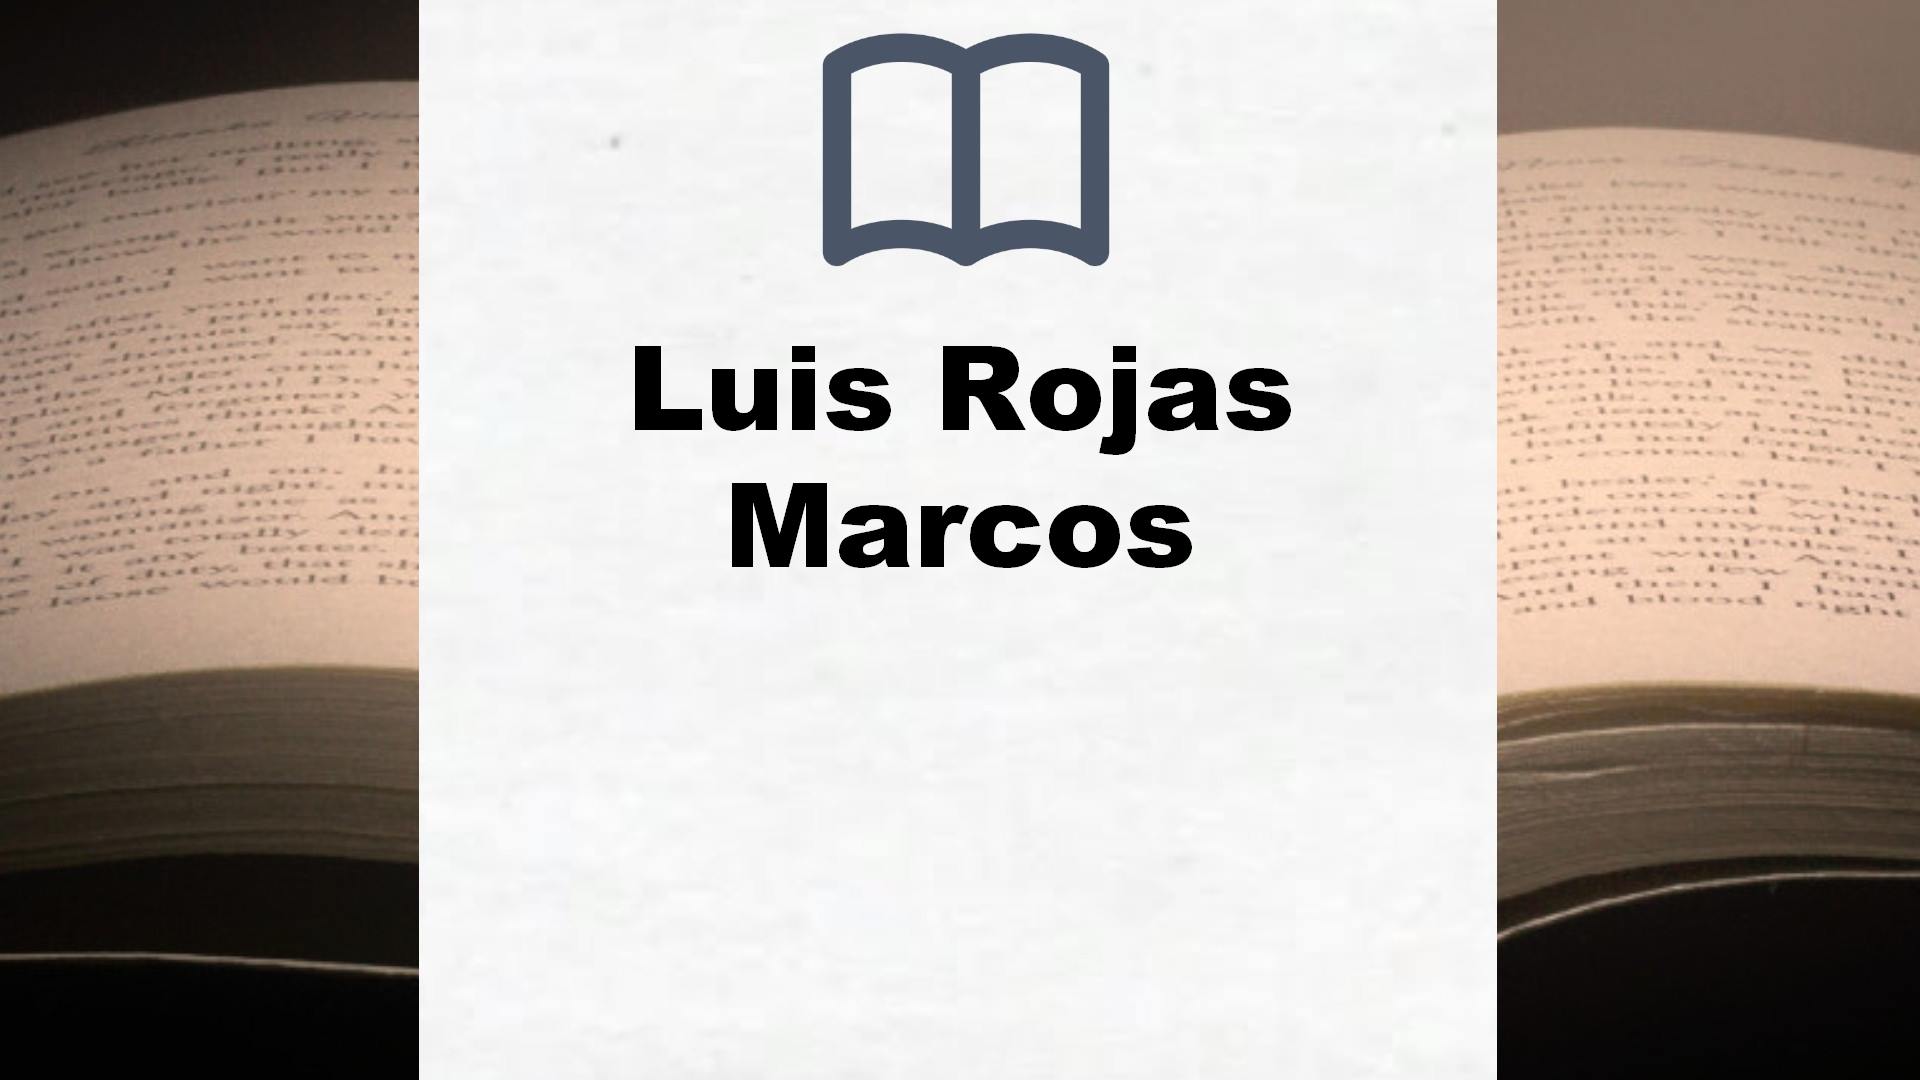 Libros Luis Rojas Marcos